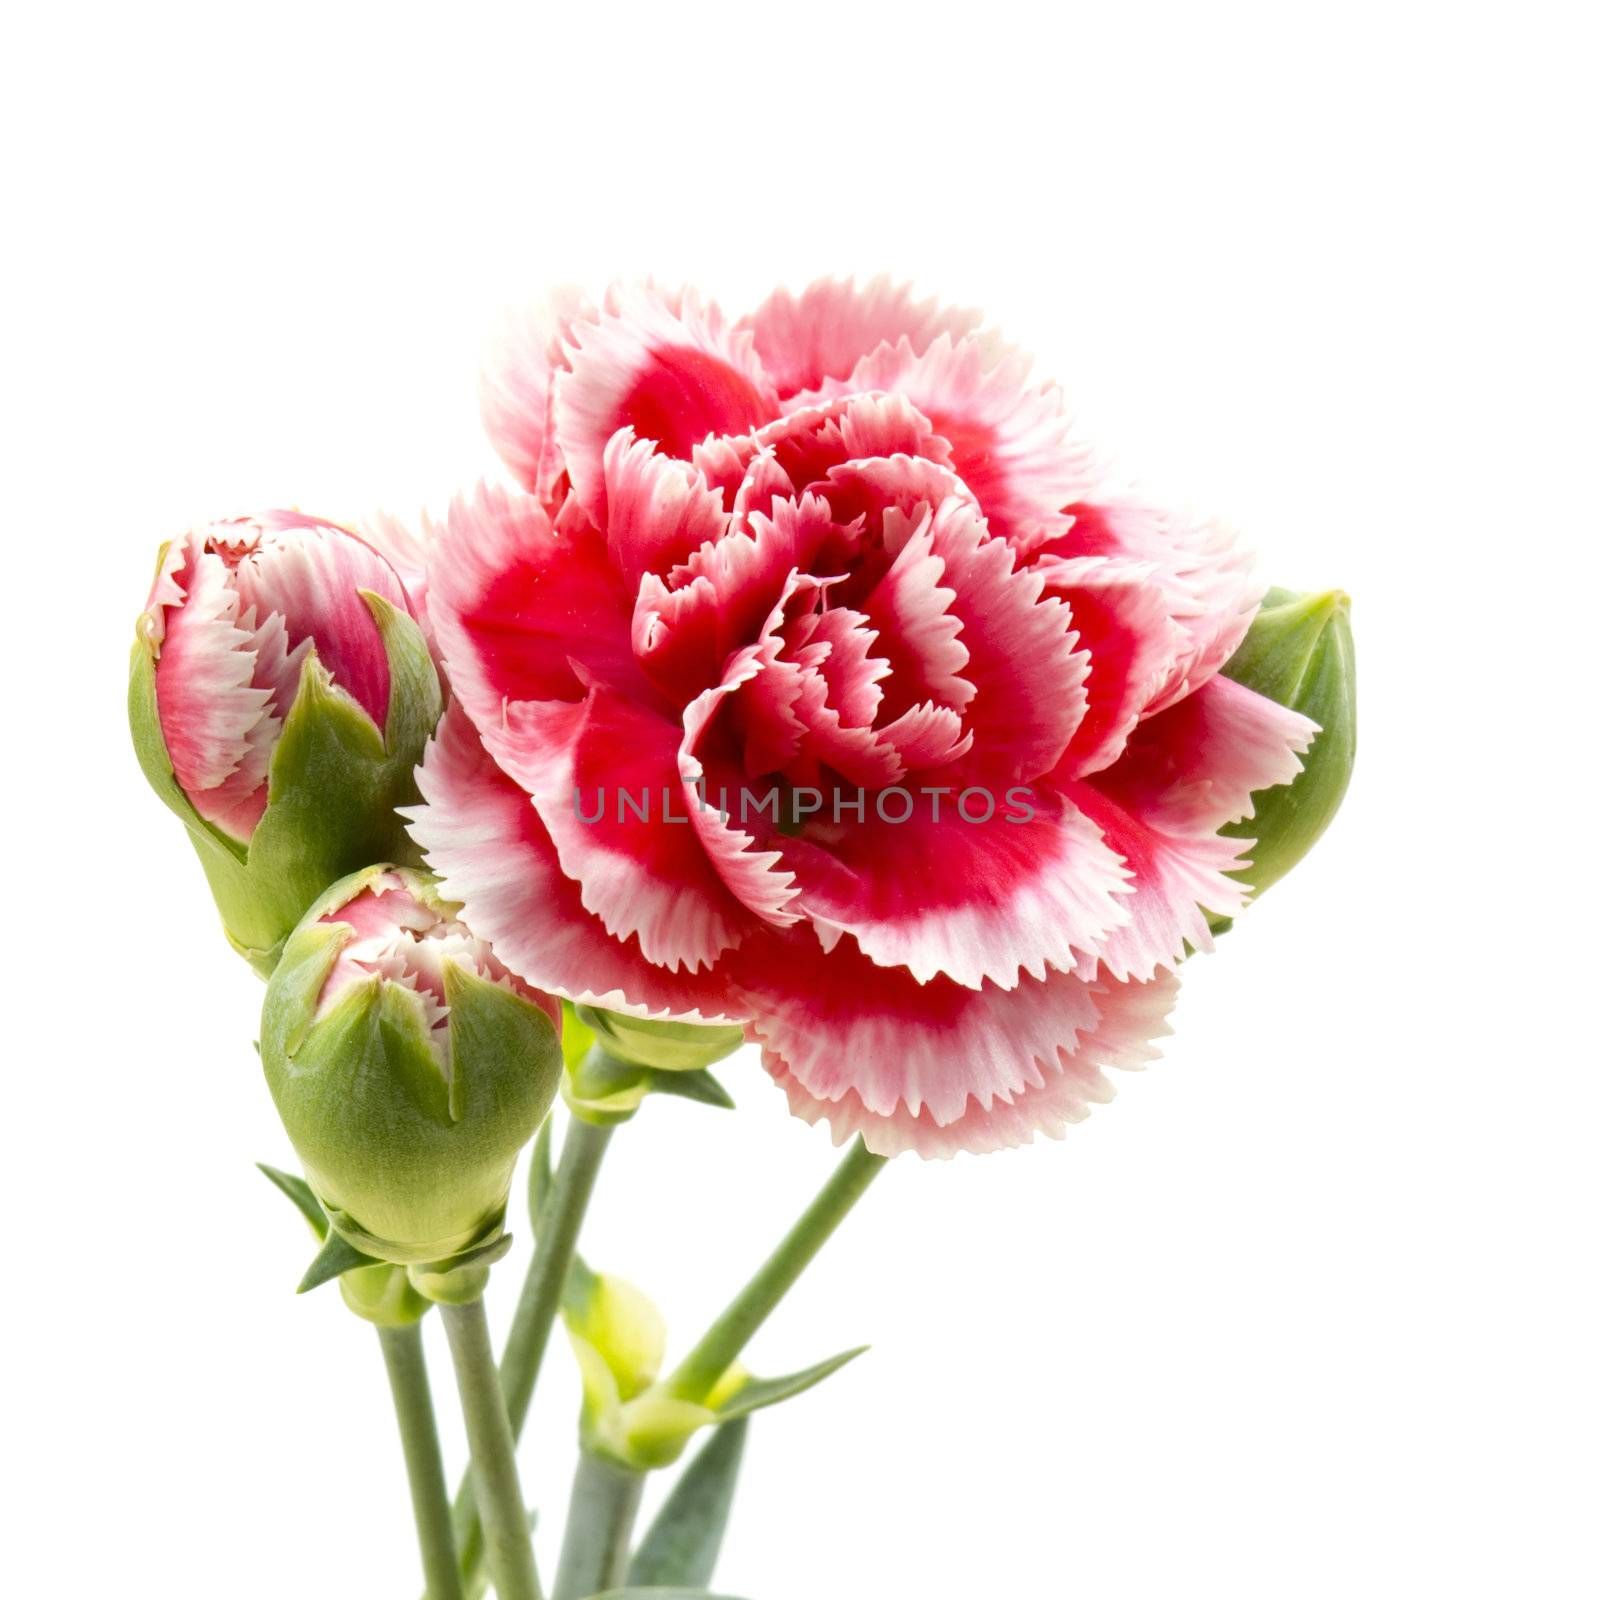 Carnations on white background by miradrozdowski